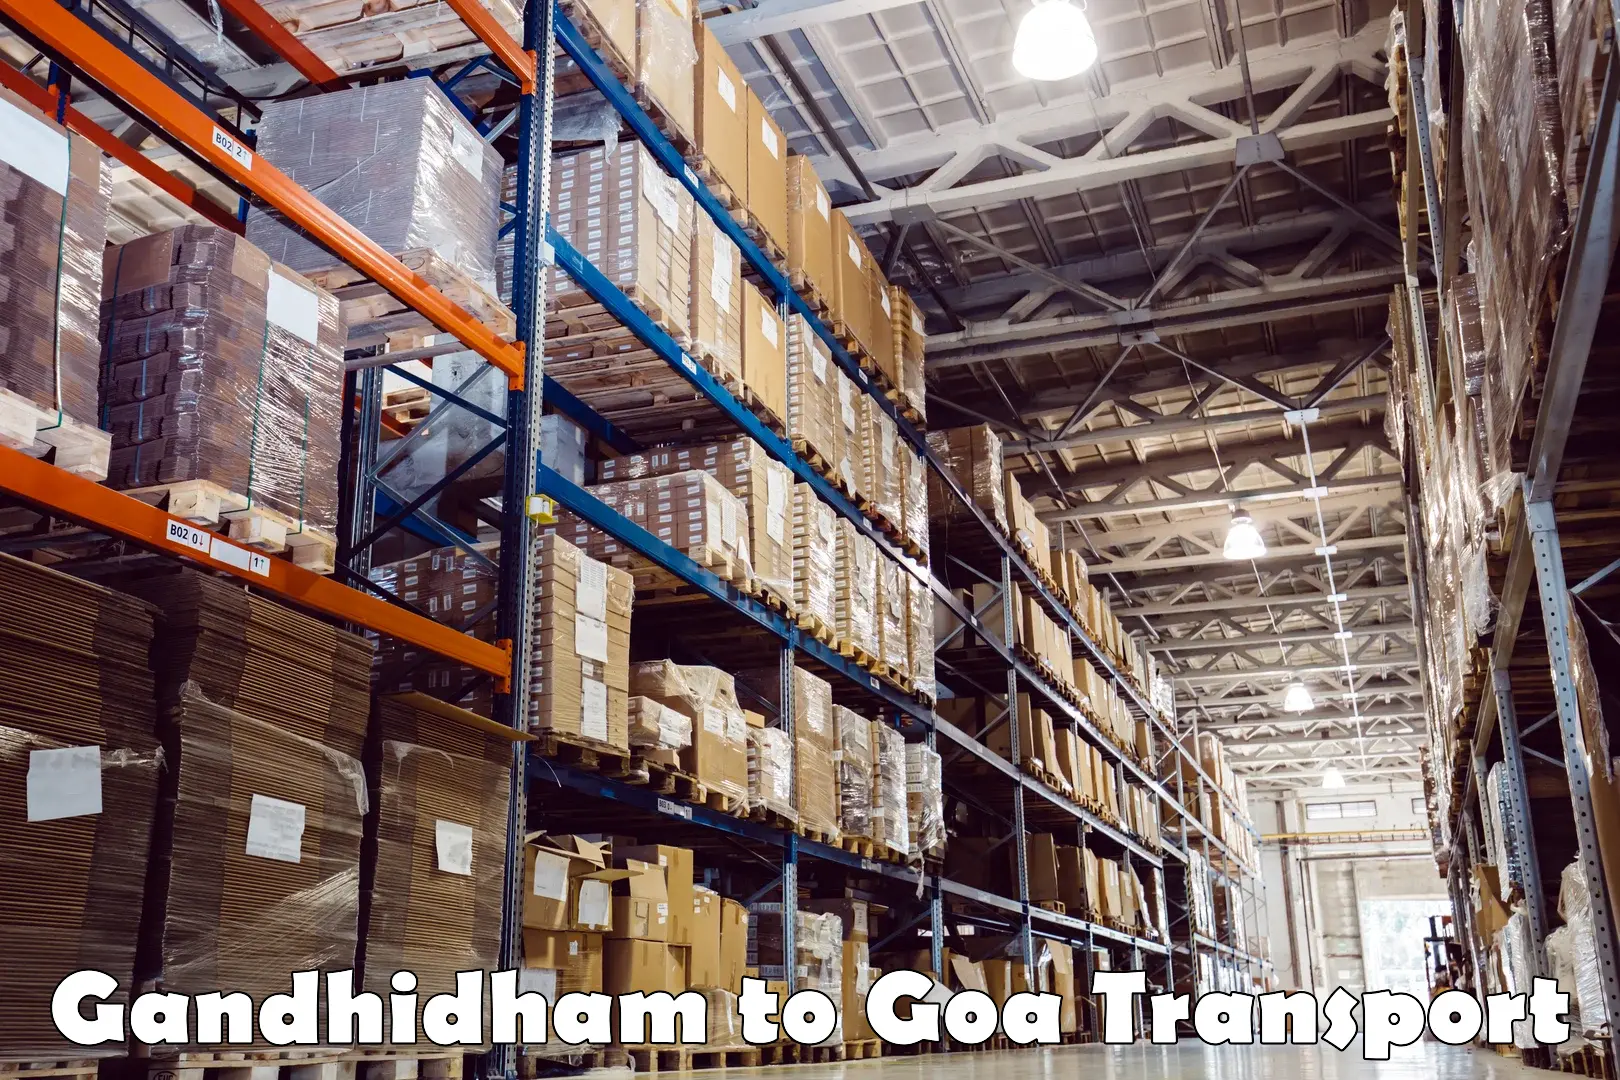 Transport shared services Gandhidham to Bicholim